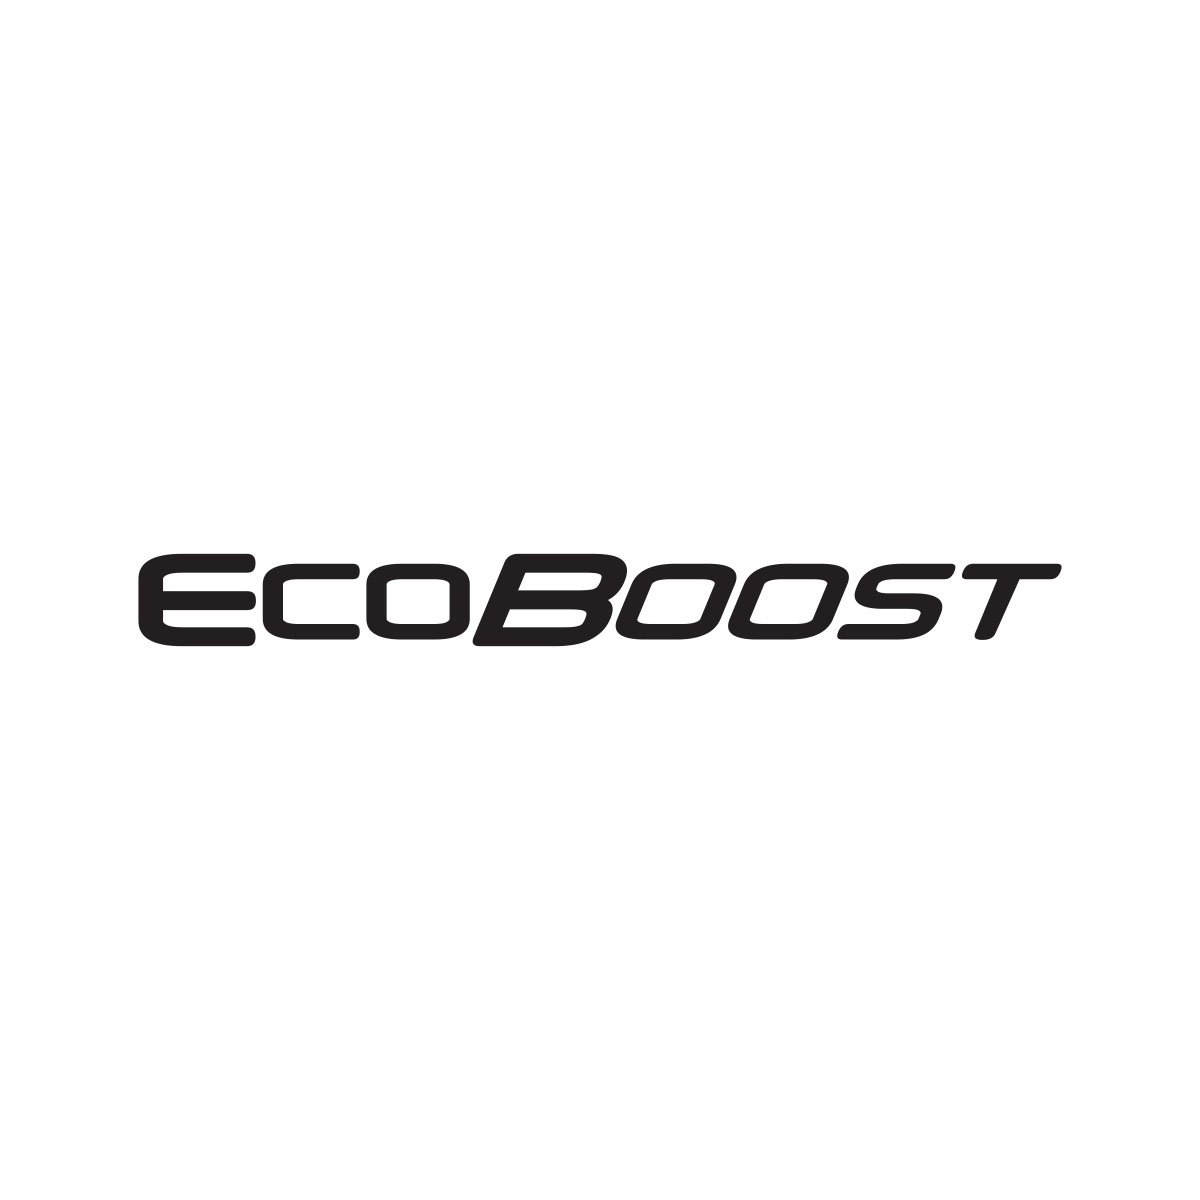 ecoboost